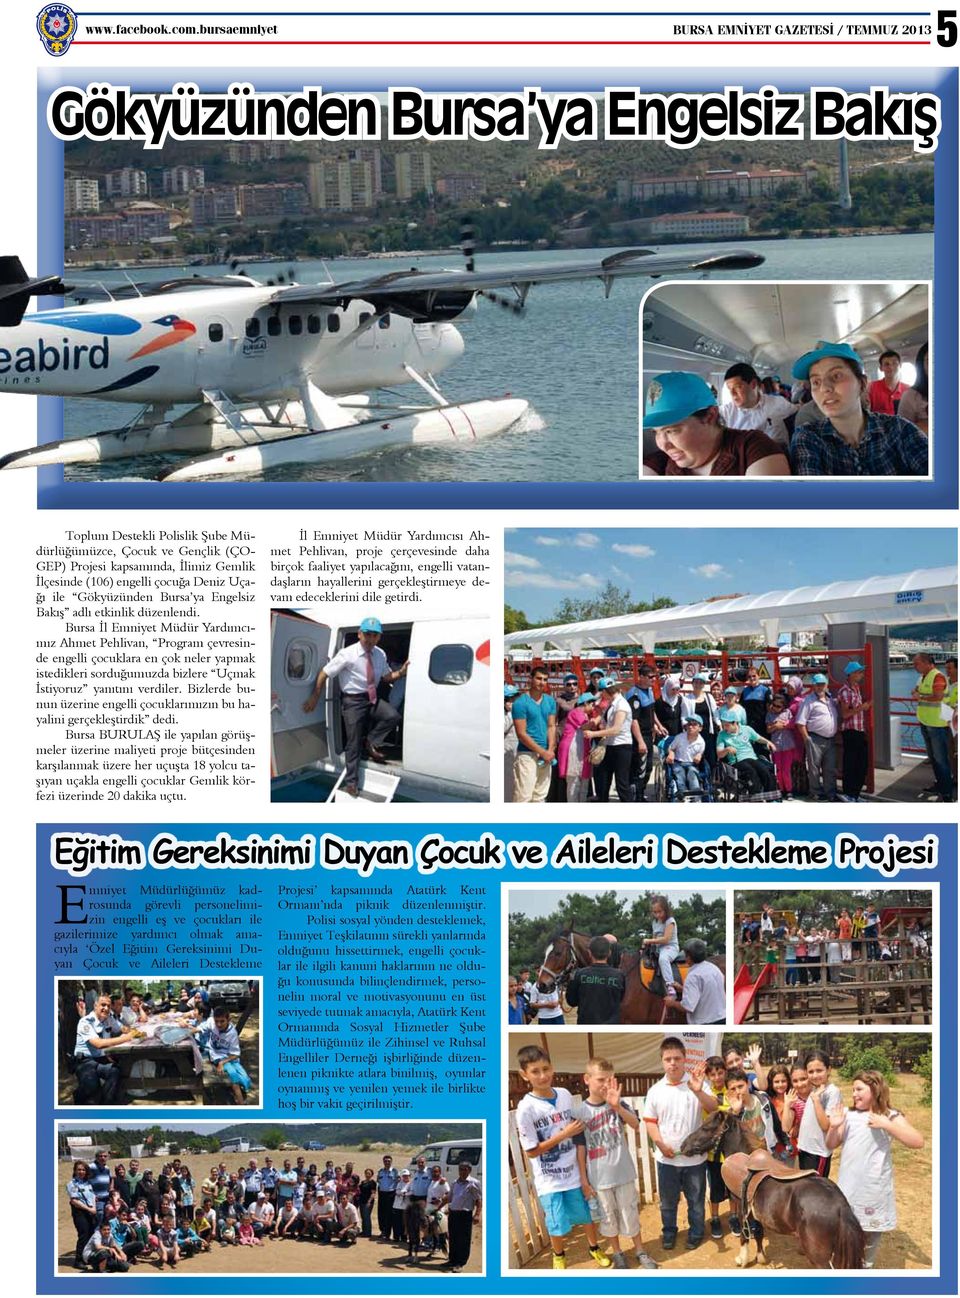 İlçesinde (106) engelli çocuğa Deniz Uçağı ile Gökyüzünden Bursa ya Engelsiz Bakış adlı etkinlik düzenlendi.